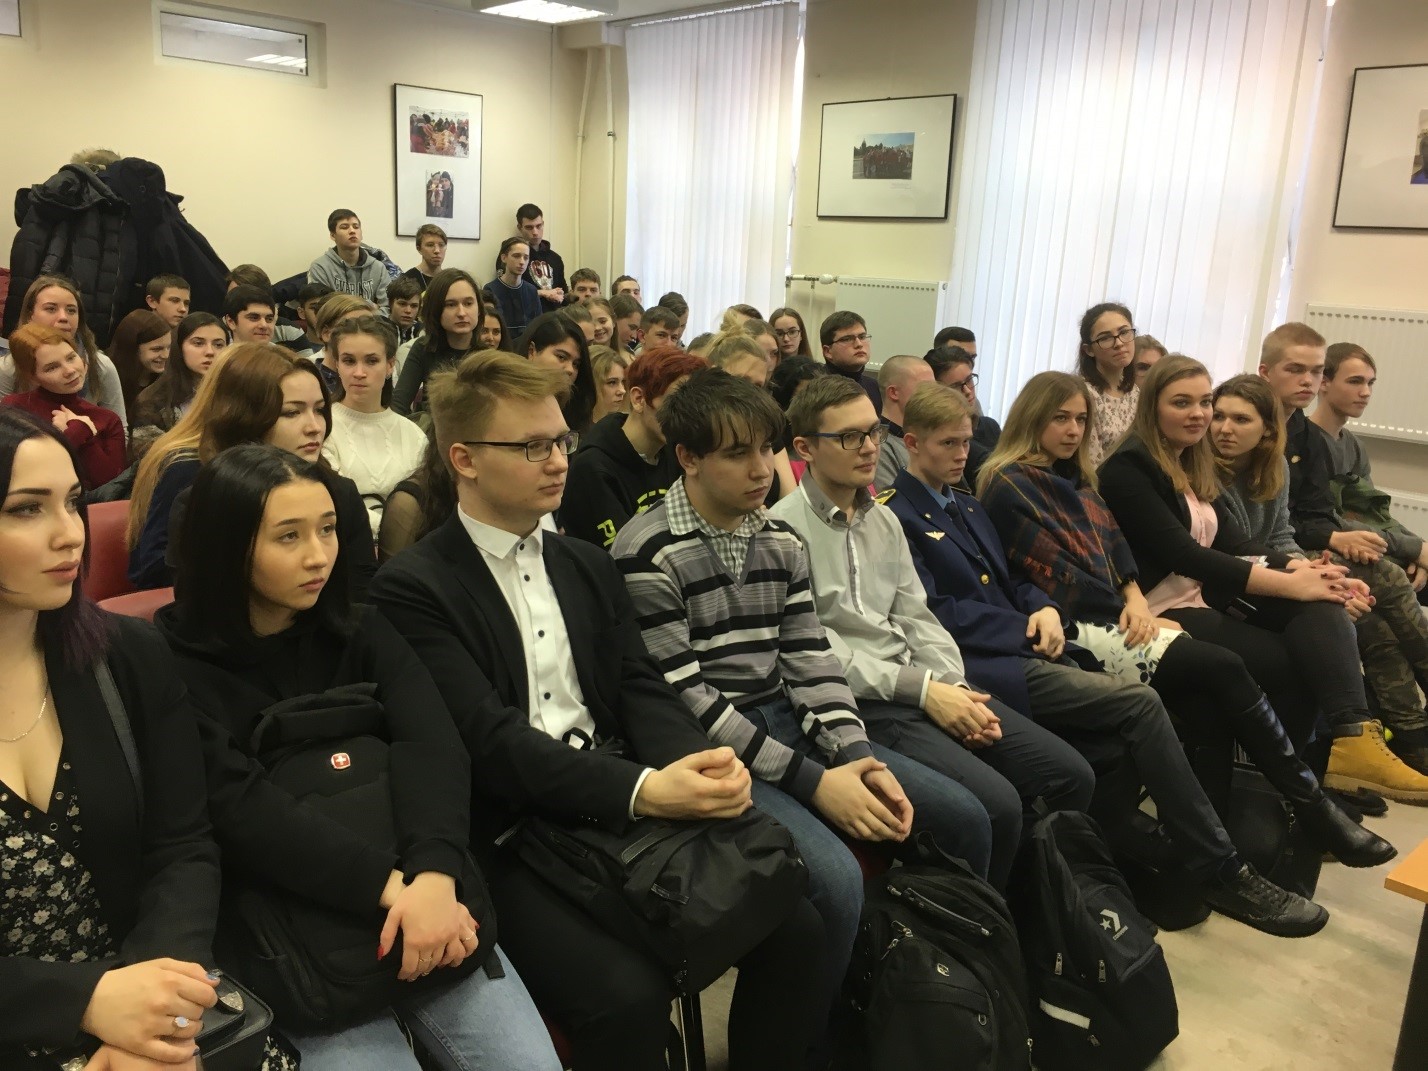 Сайт комитета по молодежной политике санкт петербурга